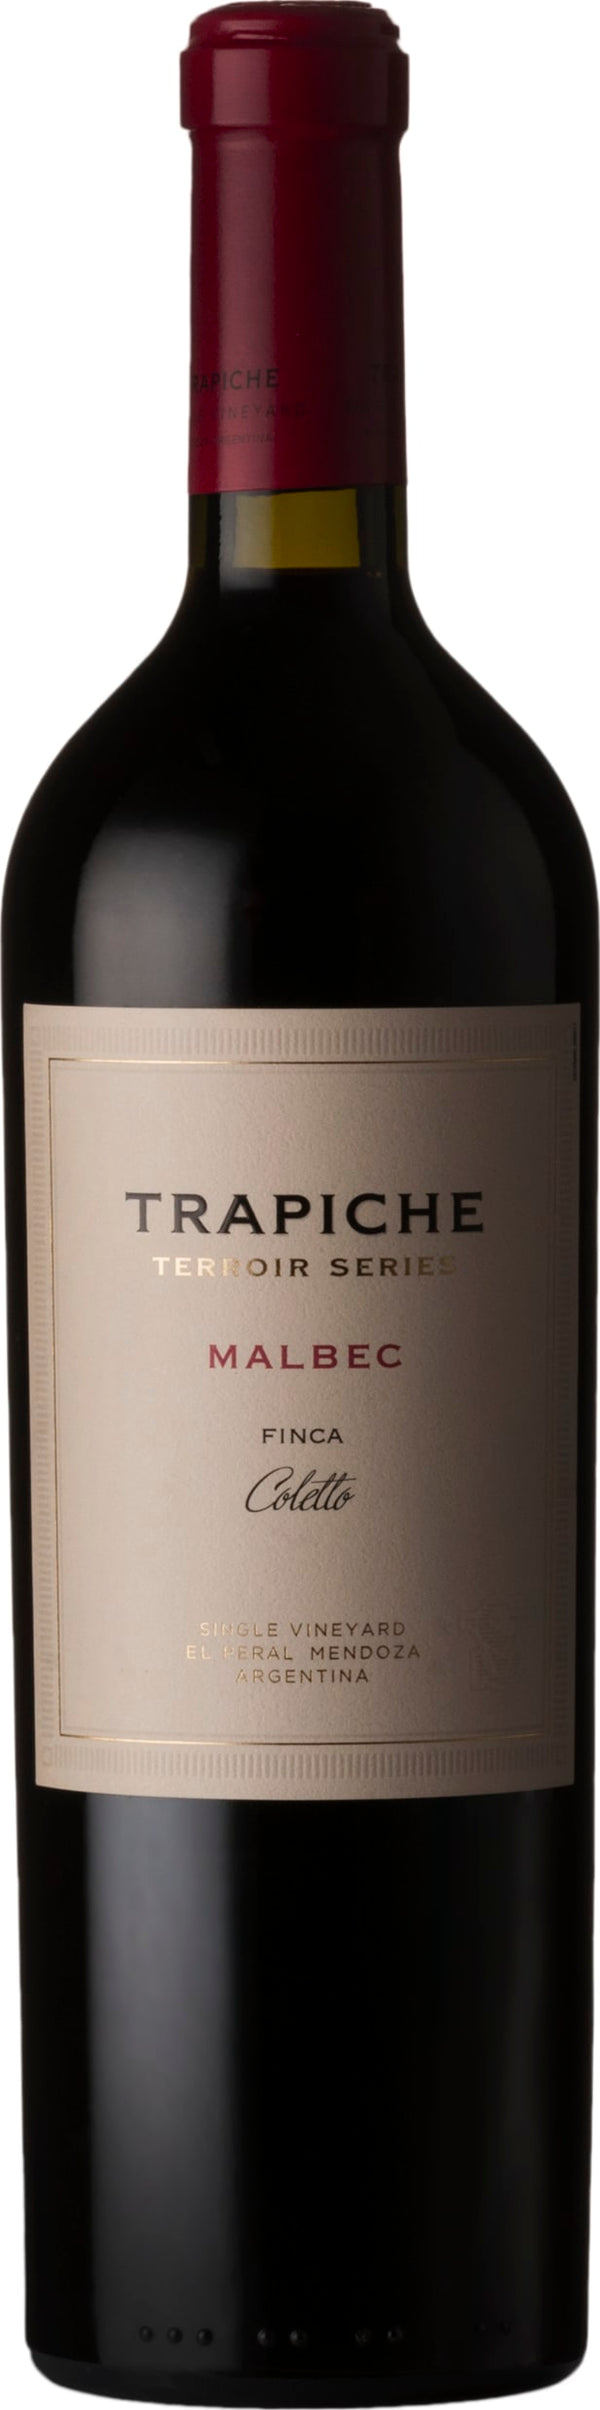 Trapiche Terroir Series Finca Coletto 2018 6x75cl - Just Wines 